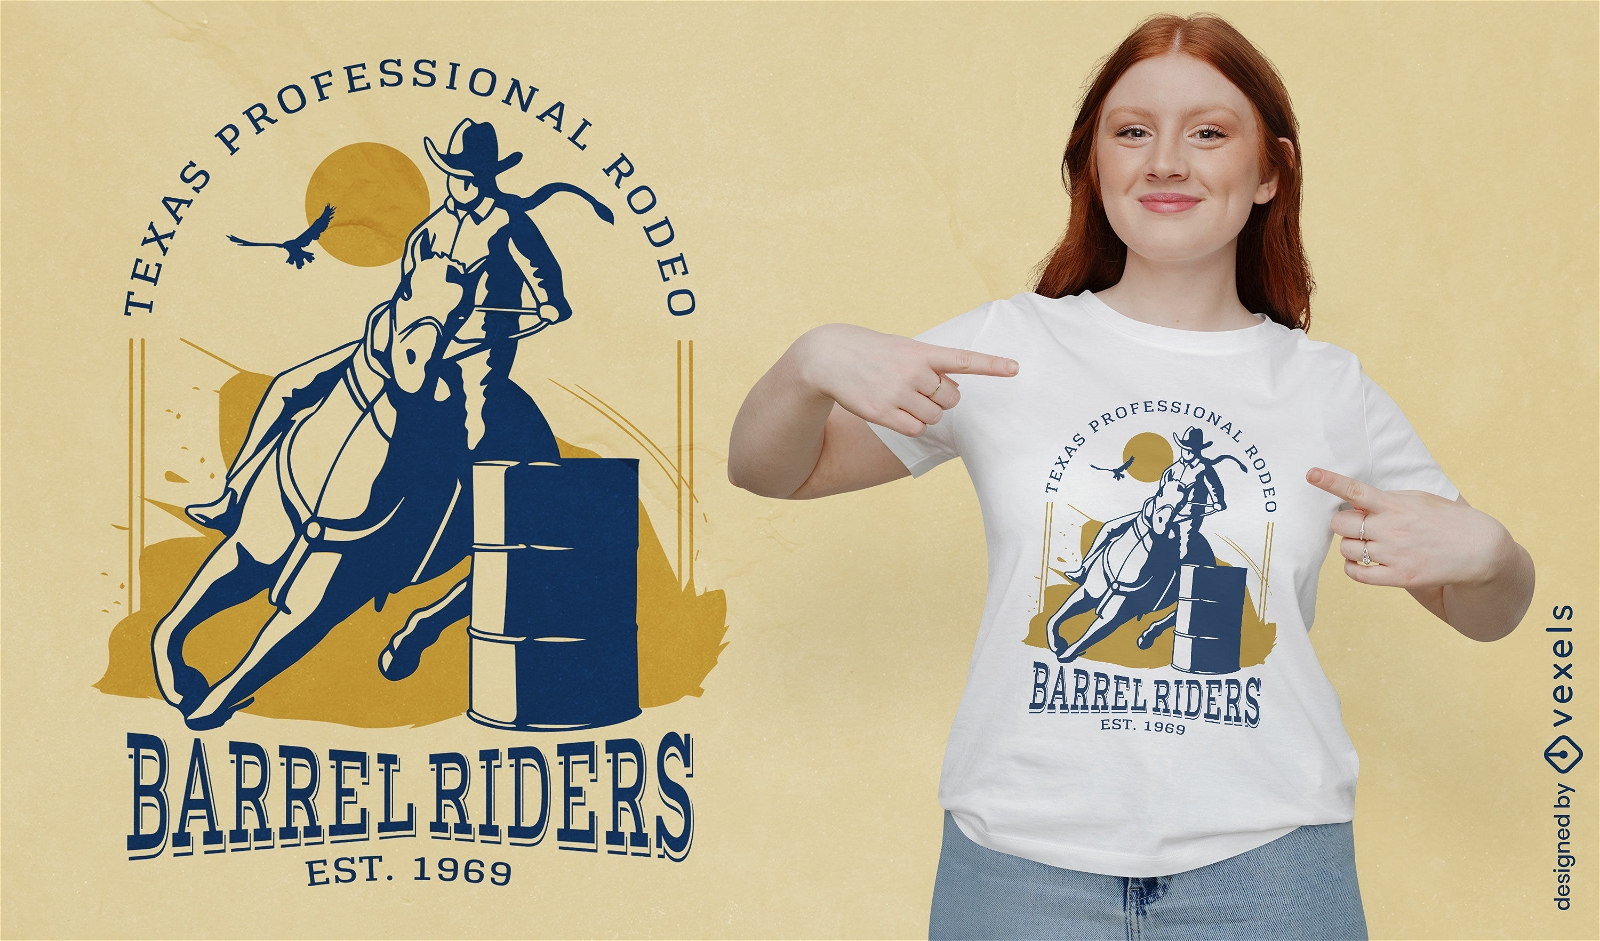 Barrel riders Texas t-shirt design